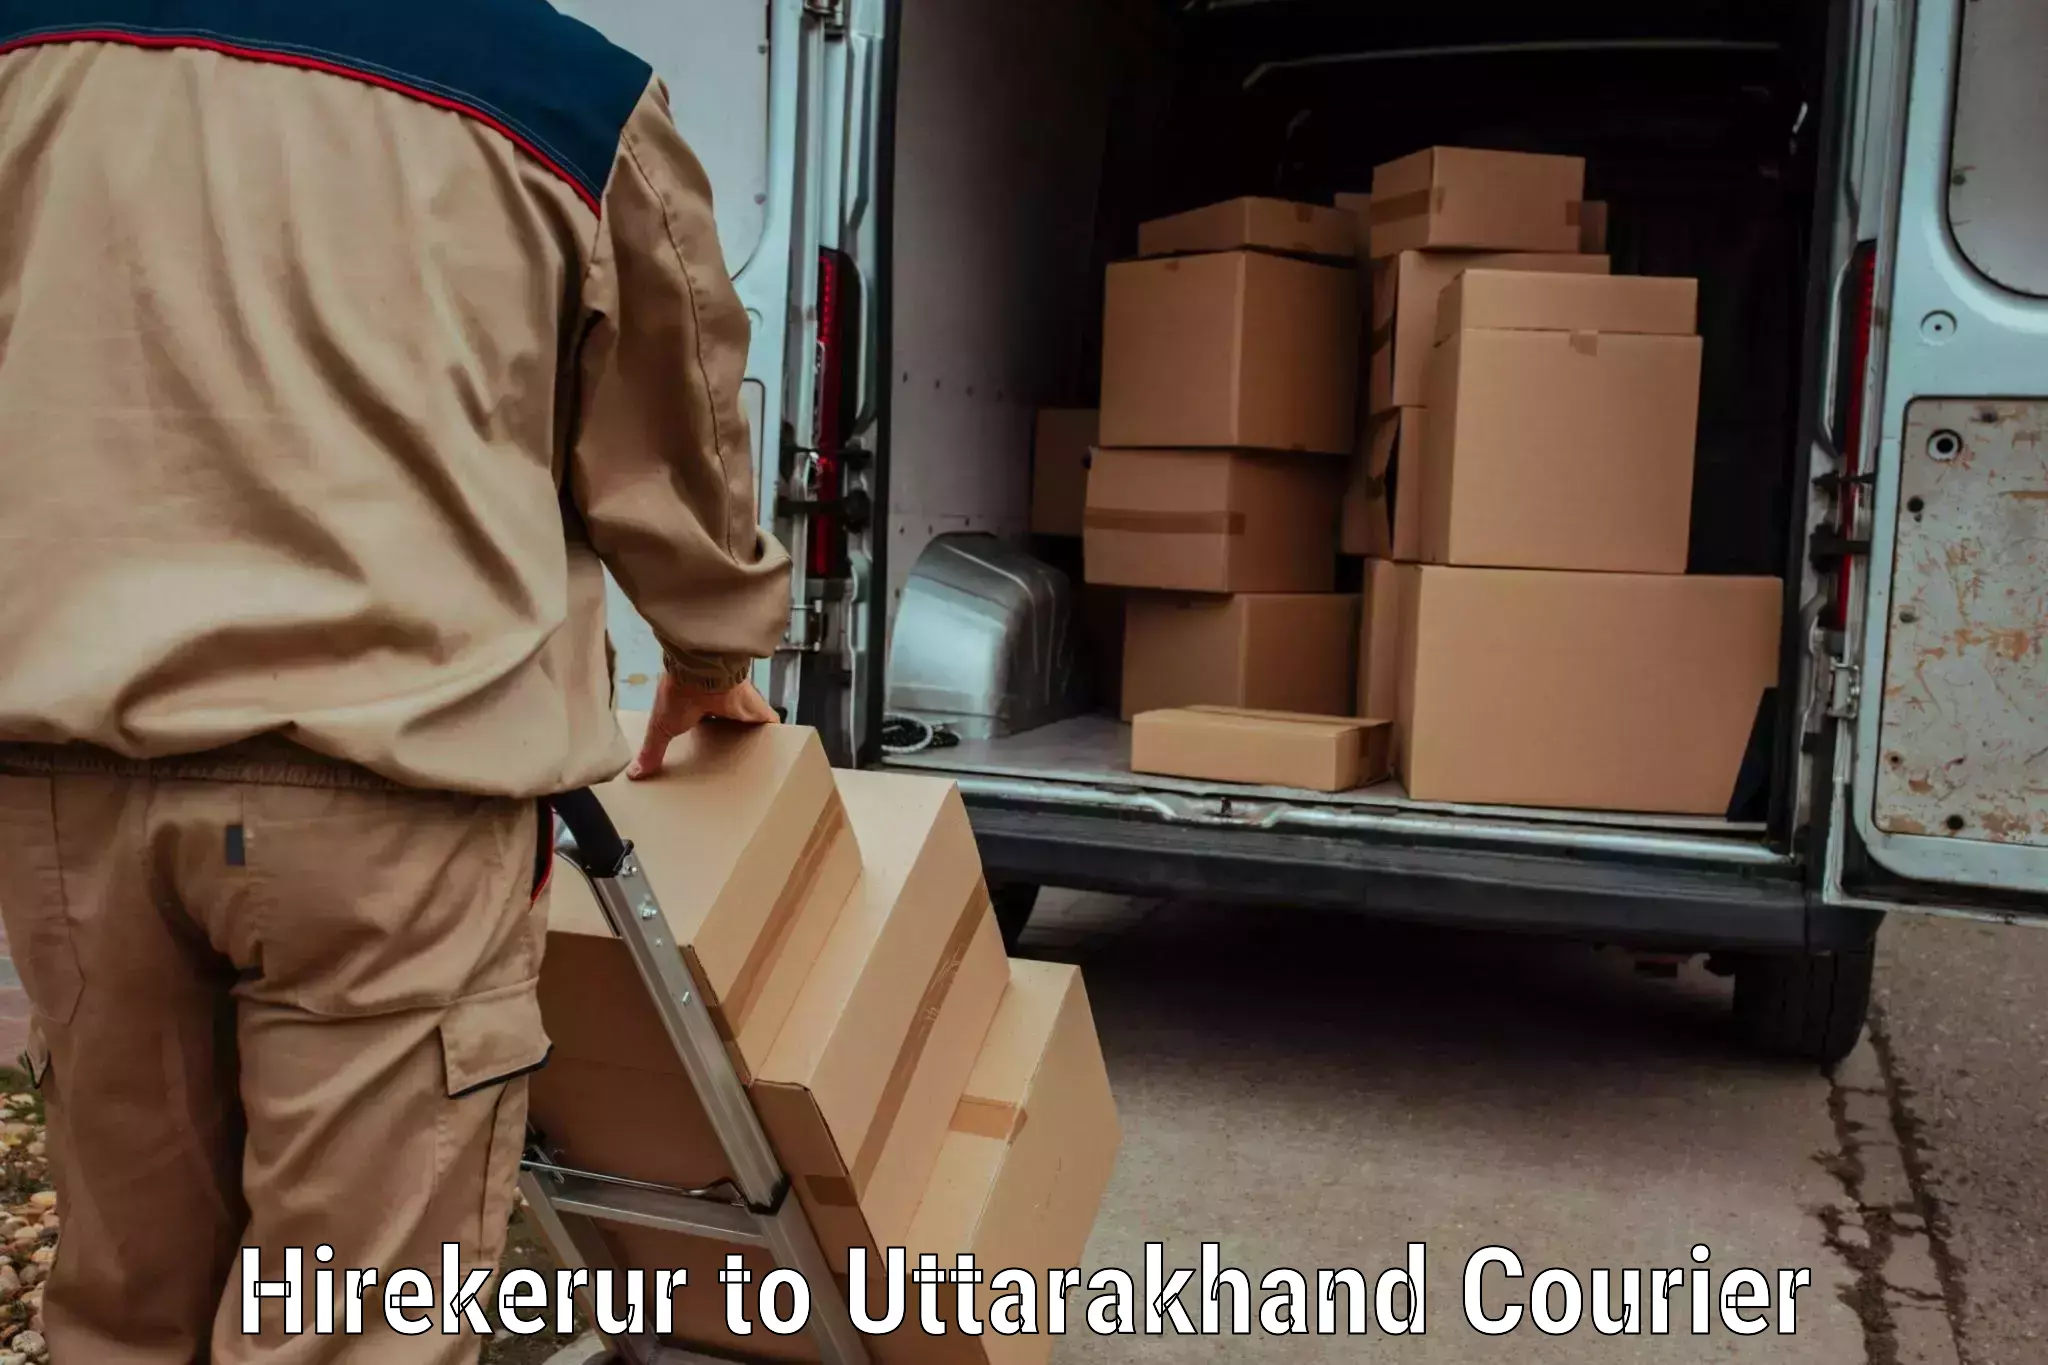 Luggage transit service Hirekerur to Uttarakhand